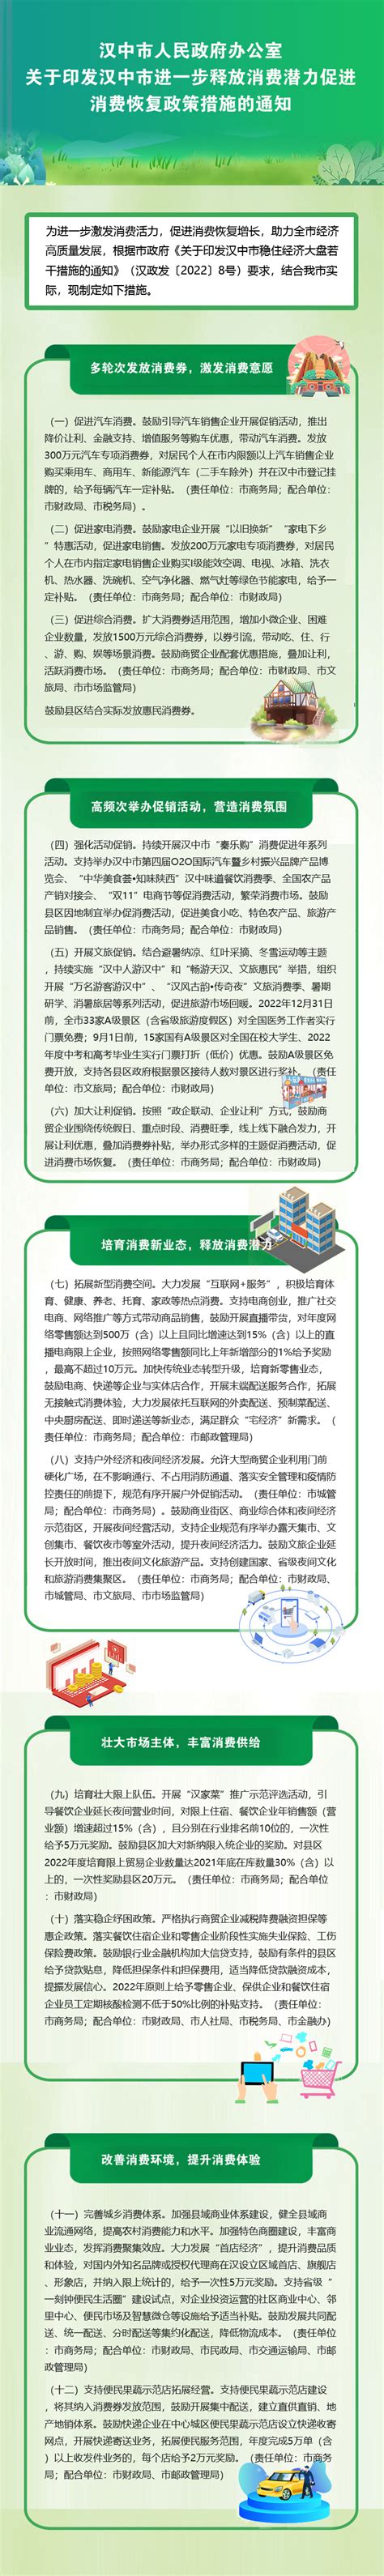 图解：汉中市人民政府办公室关于在全市中小学开展集团化办学工作的实施意见 - 图文解读 - 汉中市人民政府